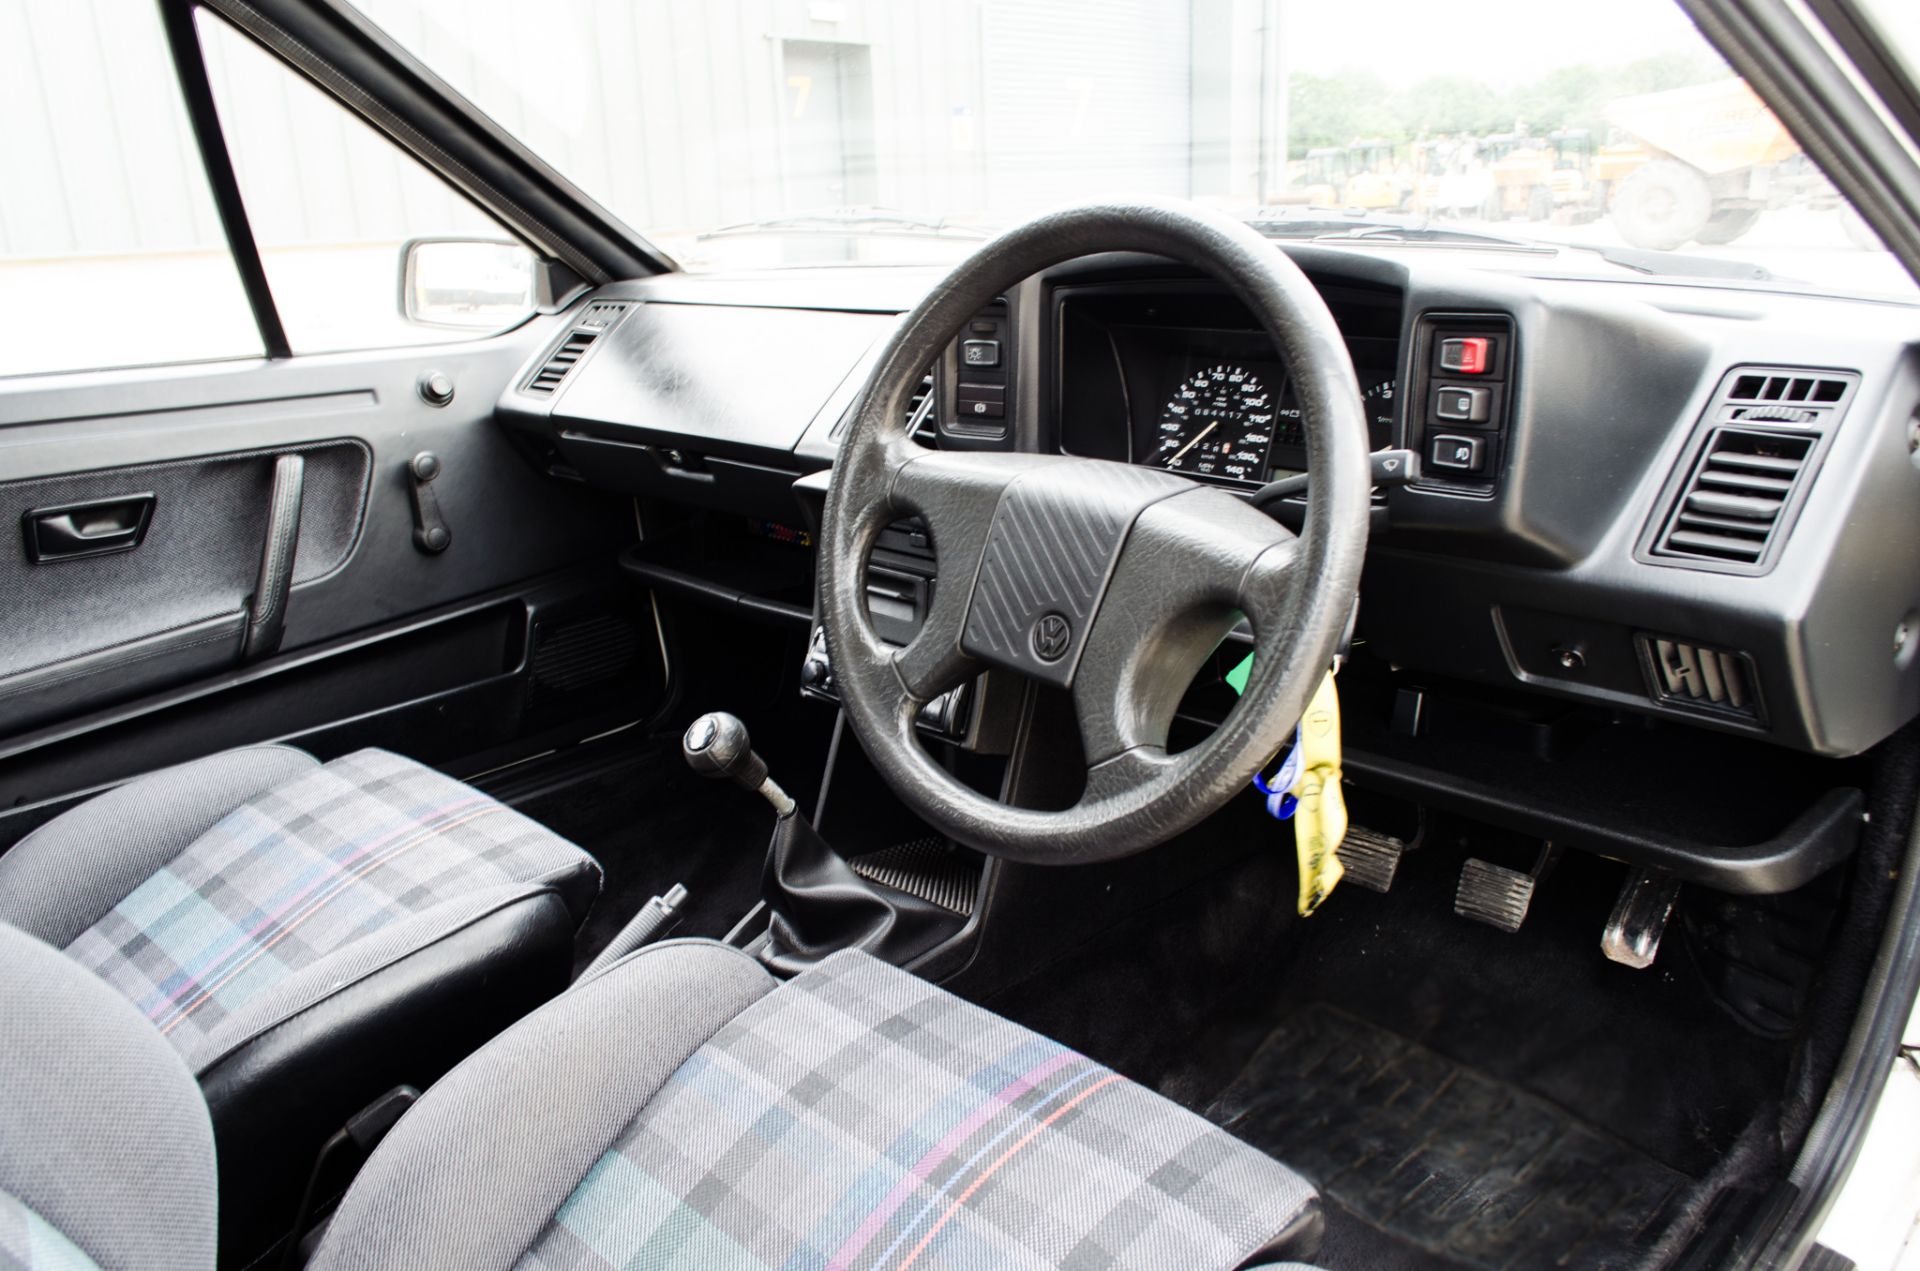 1991 Volkswagen Scirocco GTII 1800cc 3 door coupe - Image 27 of 46